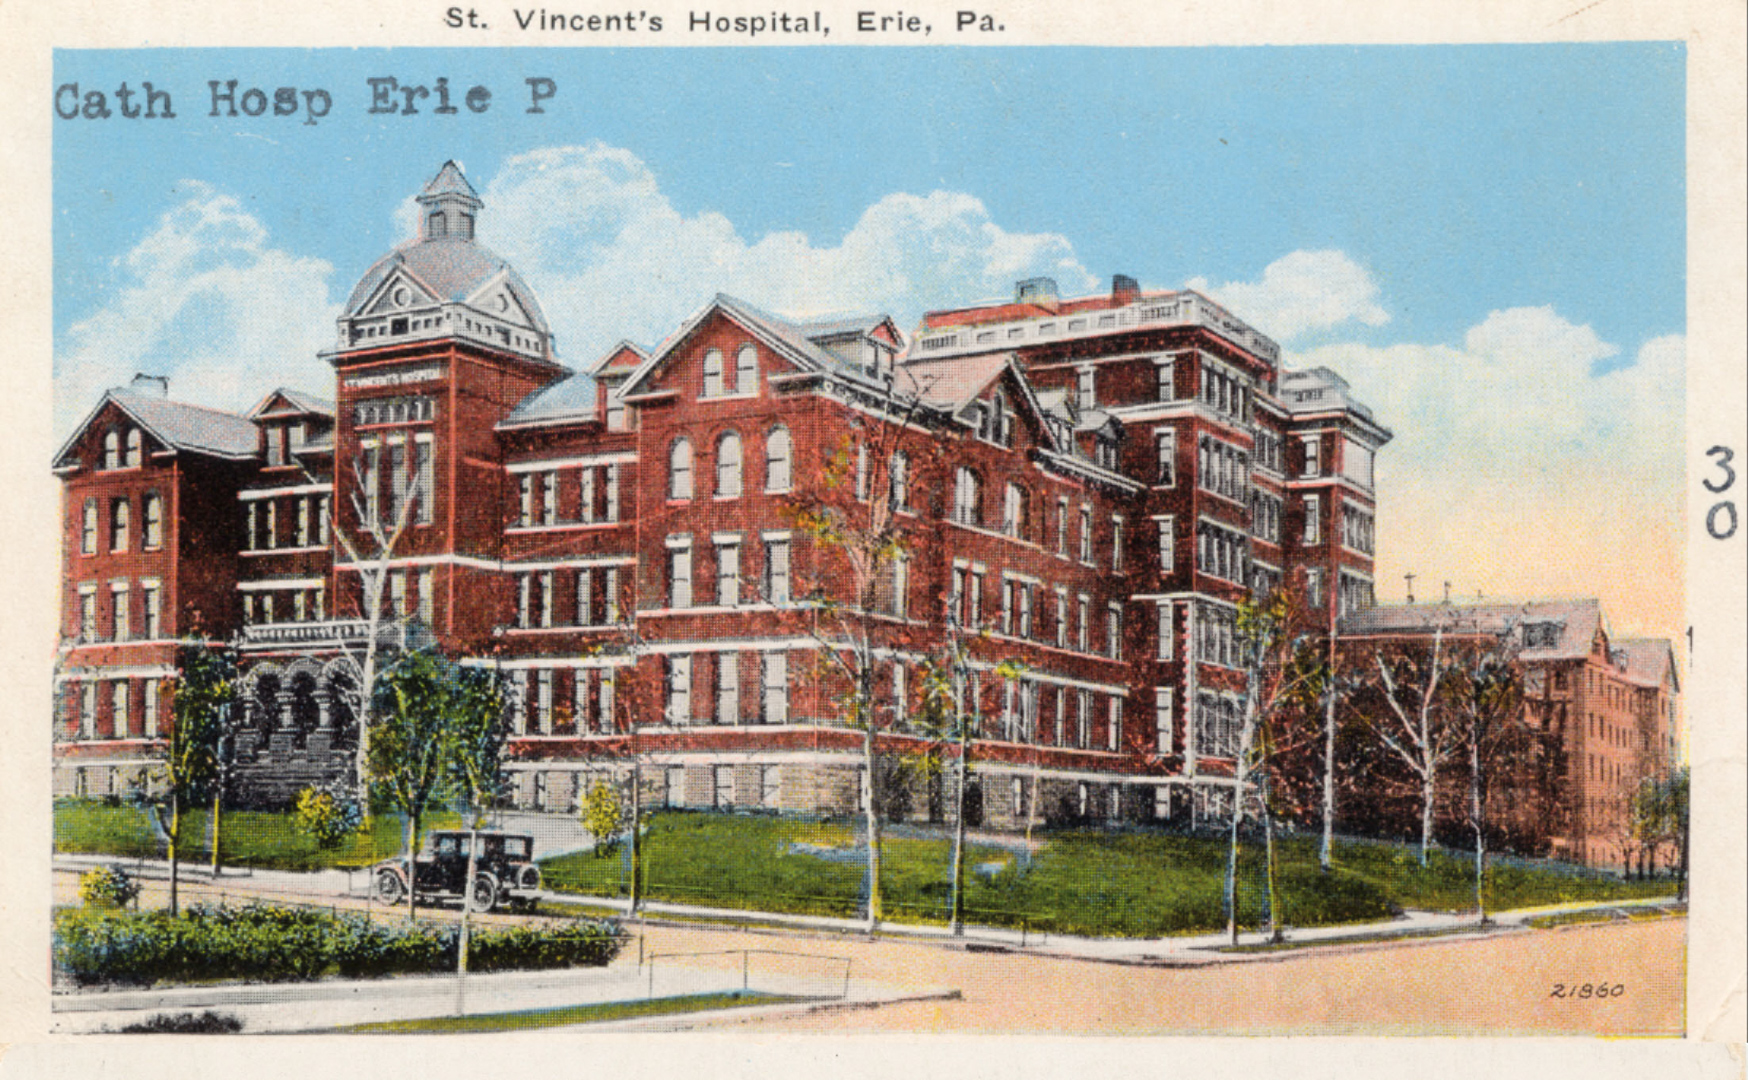 St. Vincent's Hospital, Erie PA